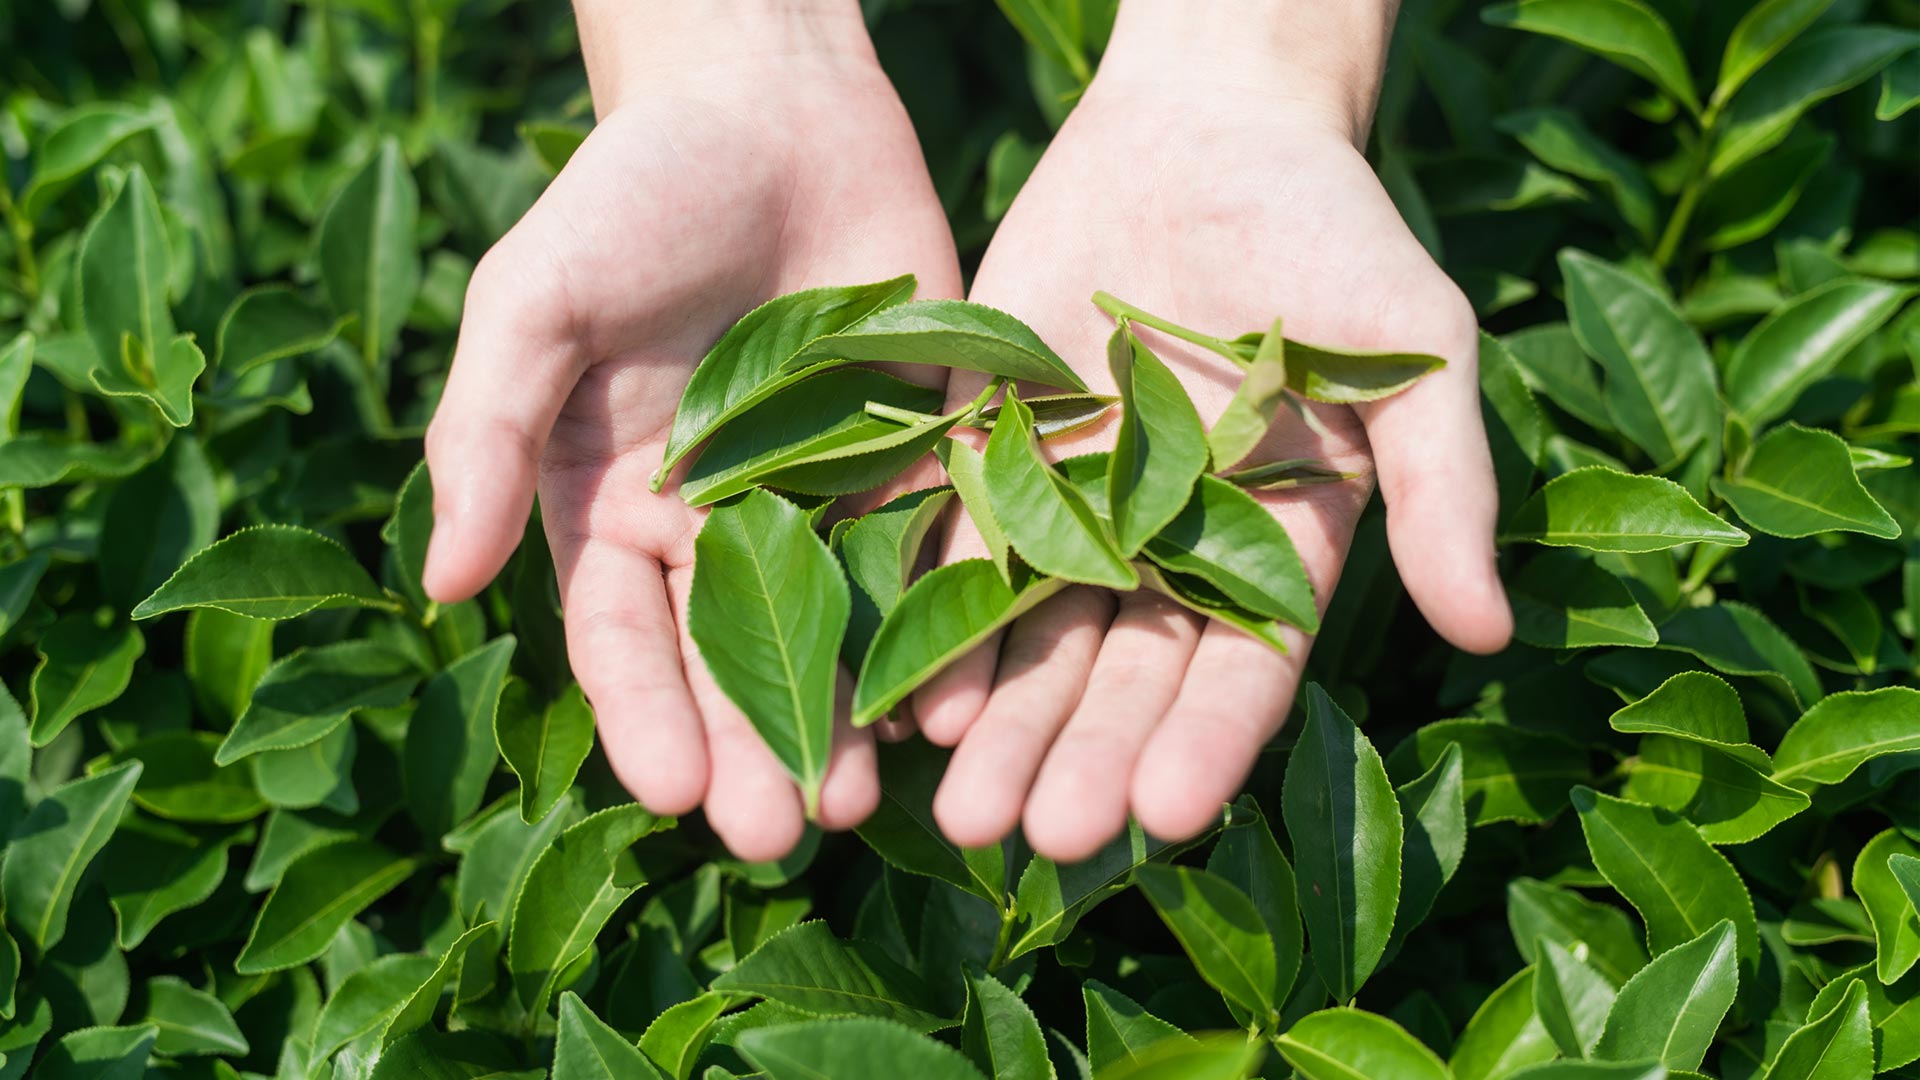 Hands holding fresh tea leaves